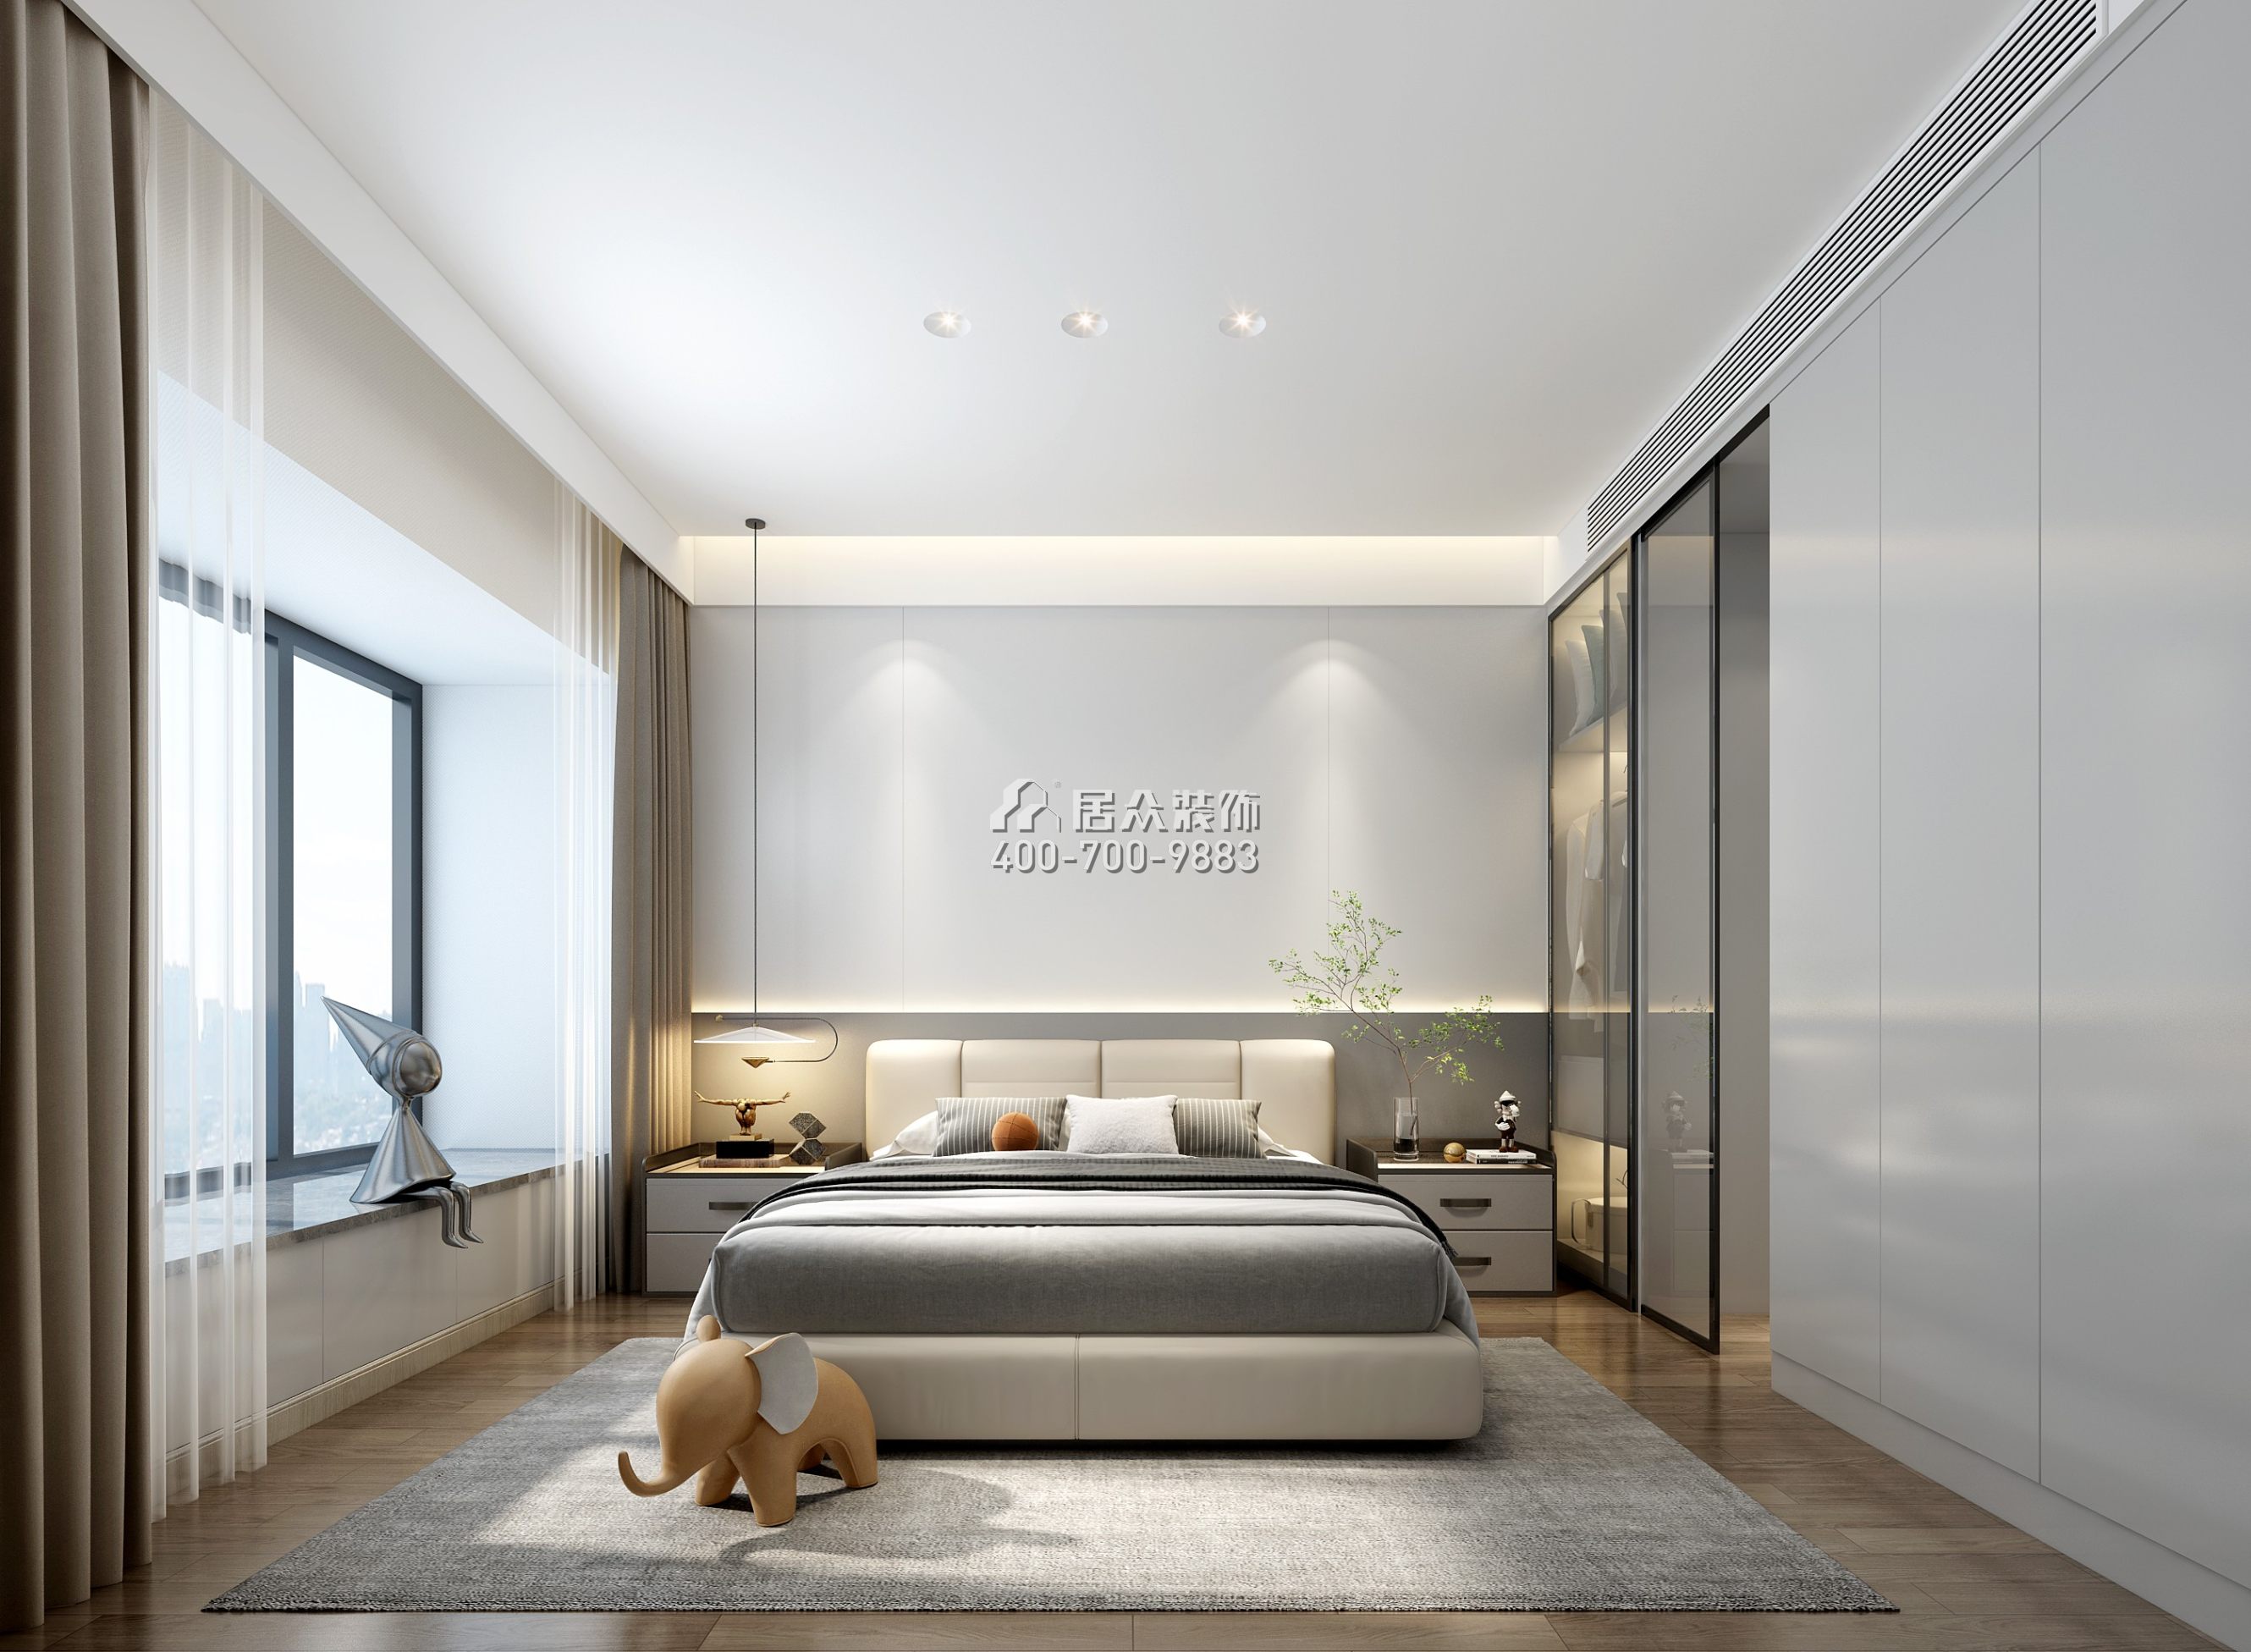 鴻榮源壹城中心112平方米現代簡約風格平層戶型臥室裝修效果圖